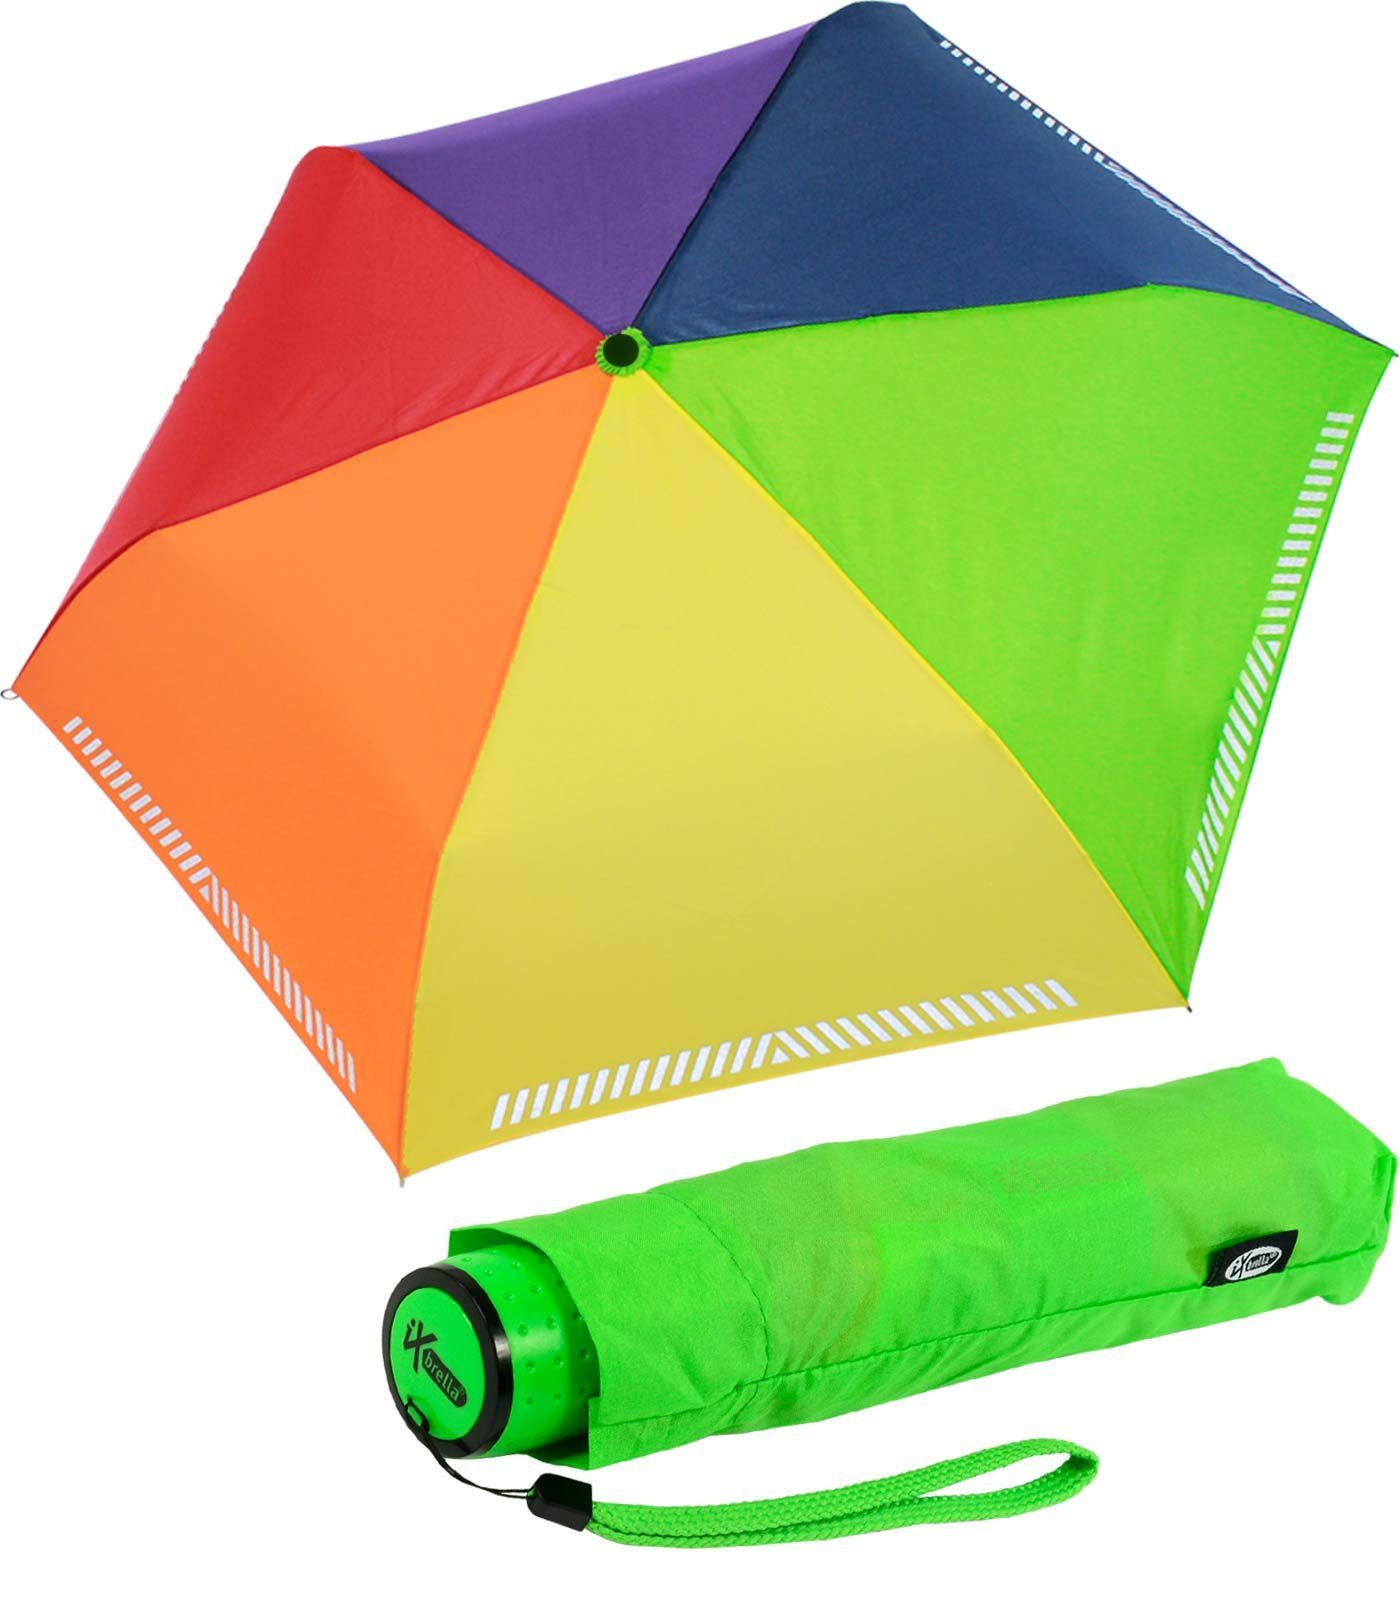 Taschenregenschirm Kinderschirm iX-brella extra Regenbogen Reflex leicht, Safety Mini reflektierend